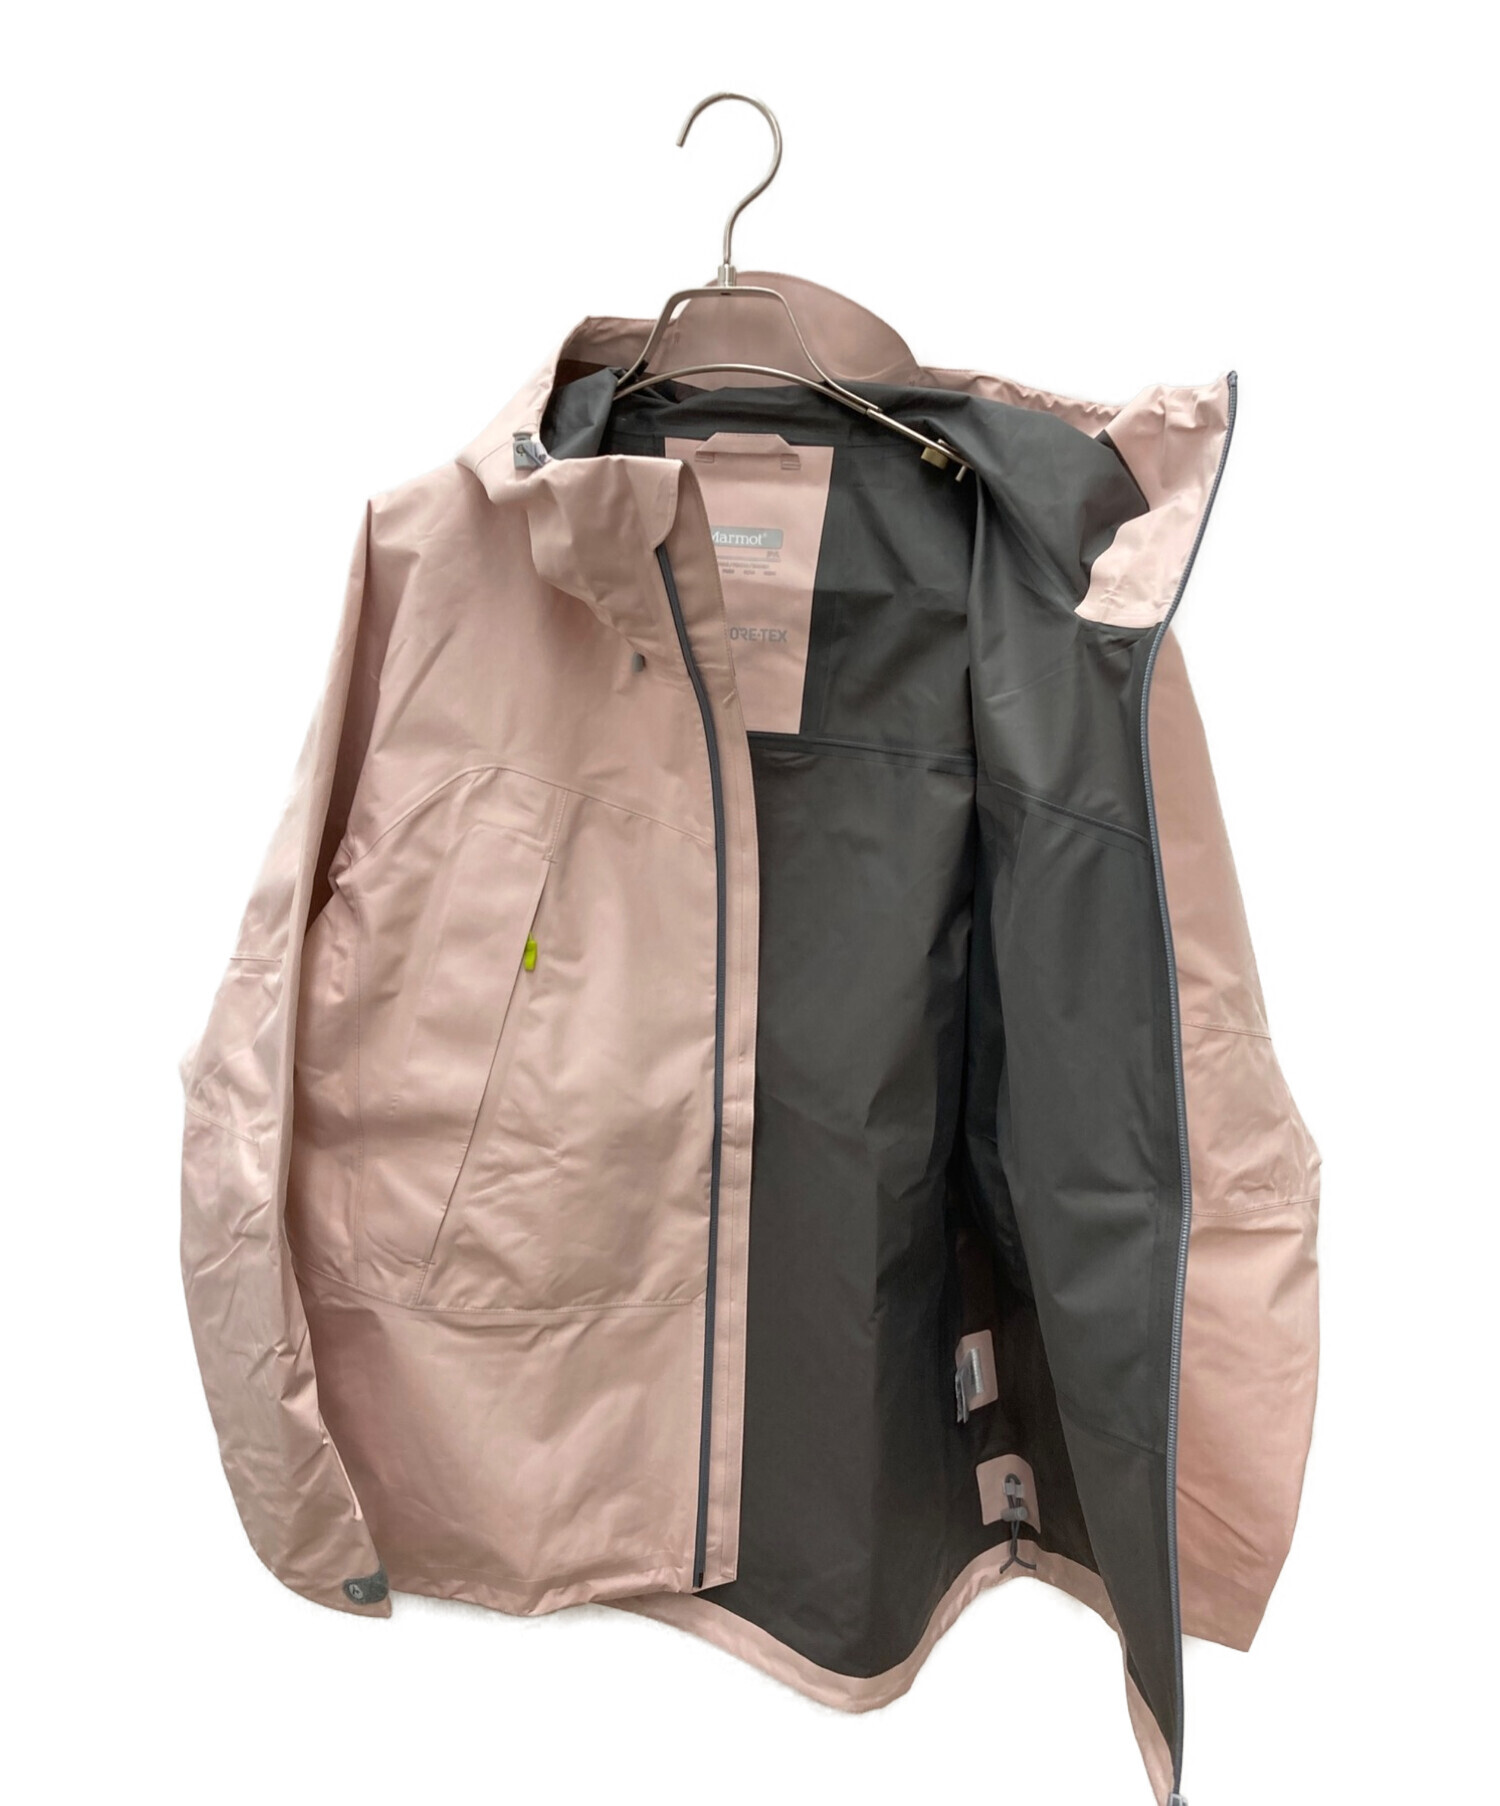 Marmot (マーモット) クラウドブレーカージャケット ピンク サイズ:L 未使用品